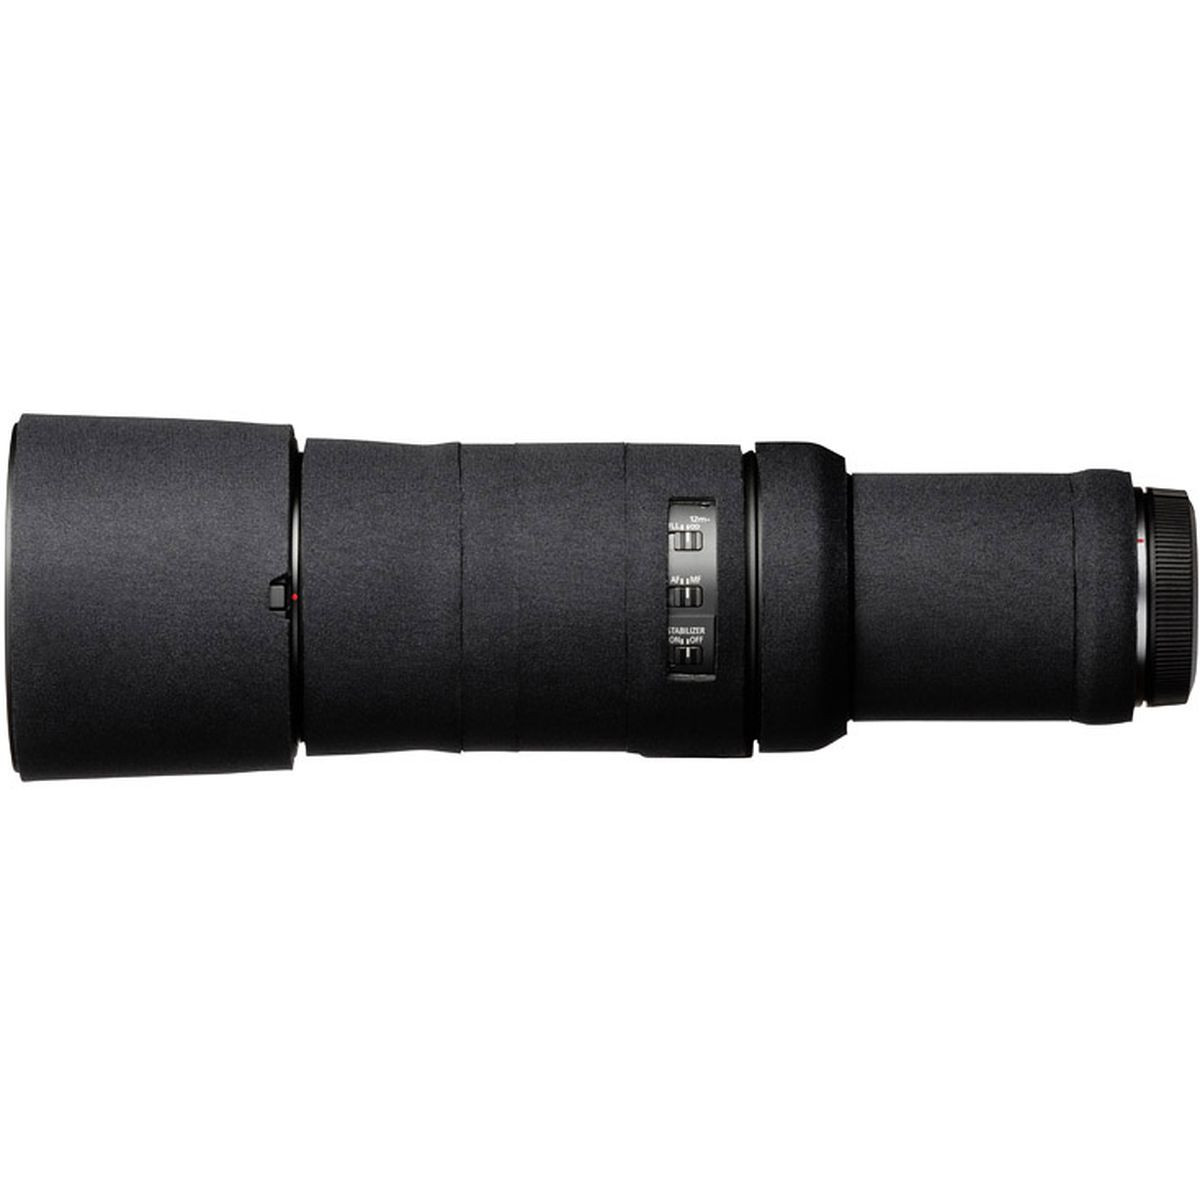 easyCover Lens Oak for Canon RF 600mm f/11 IS STM Black NEW